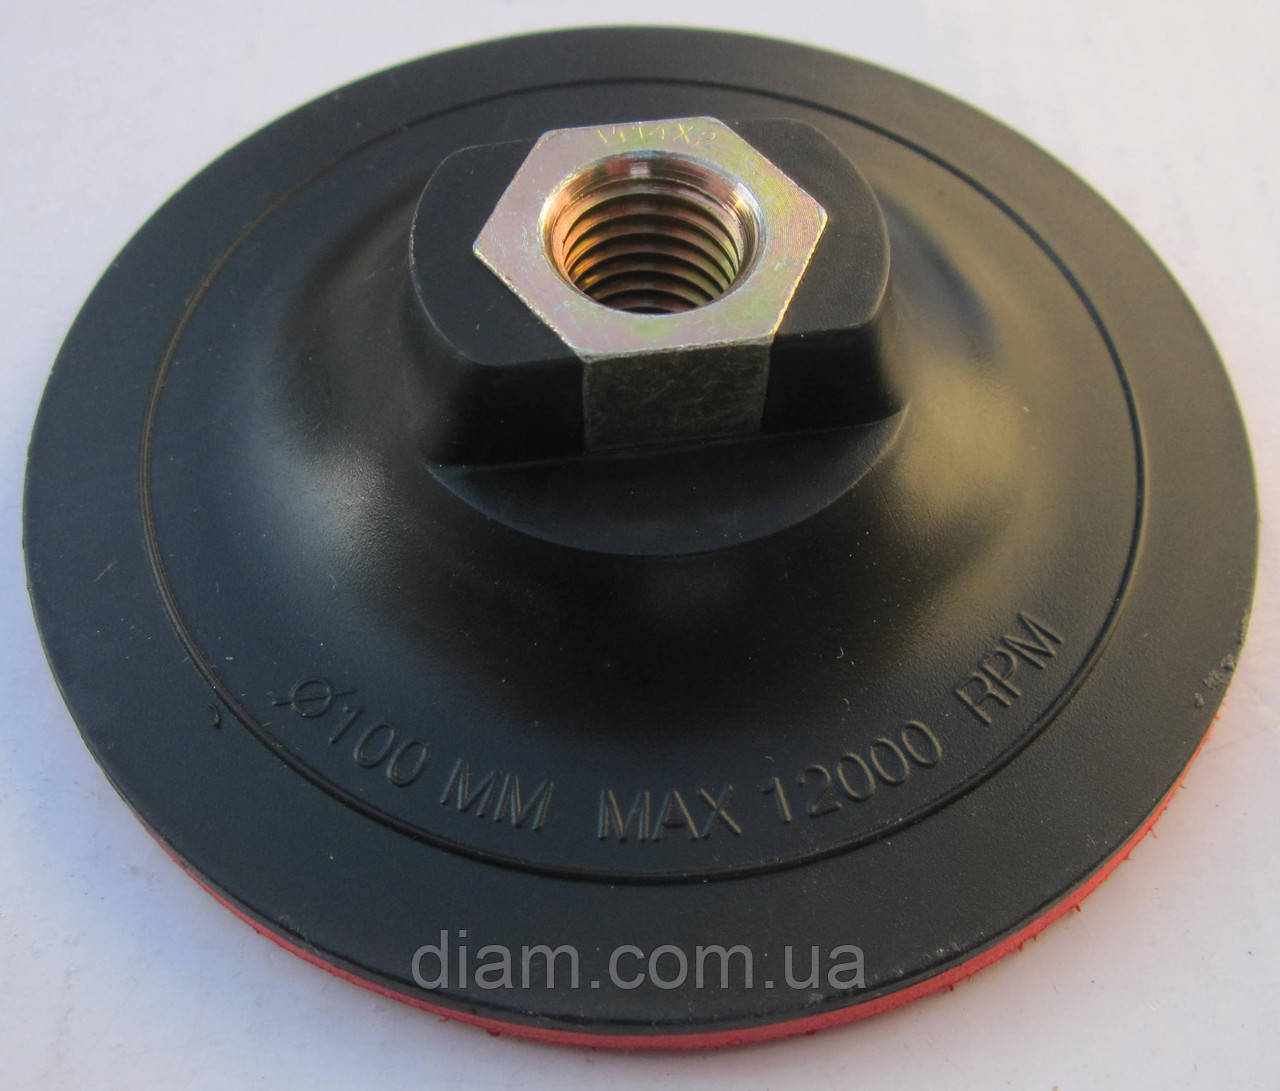 Диск підстава липучка пластикова для кріплення "Черепашок" полірувальних дисків 100х5хМ14.